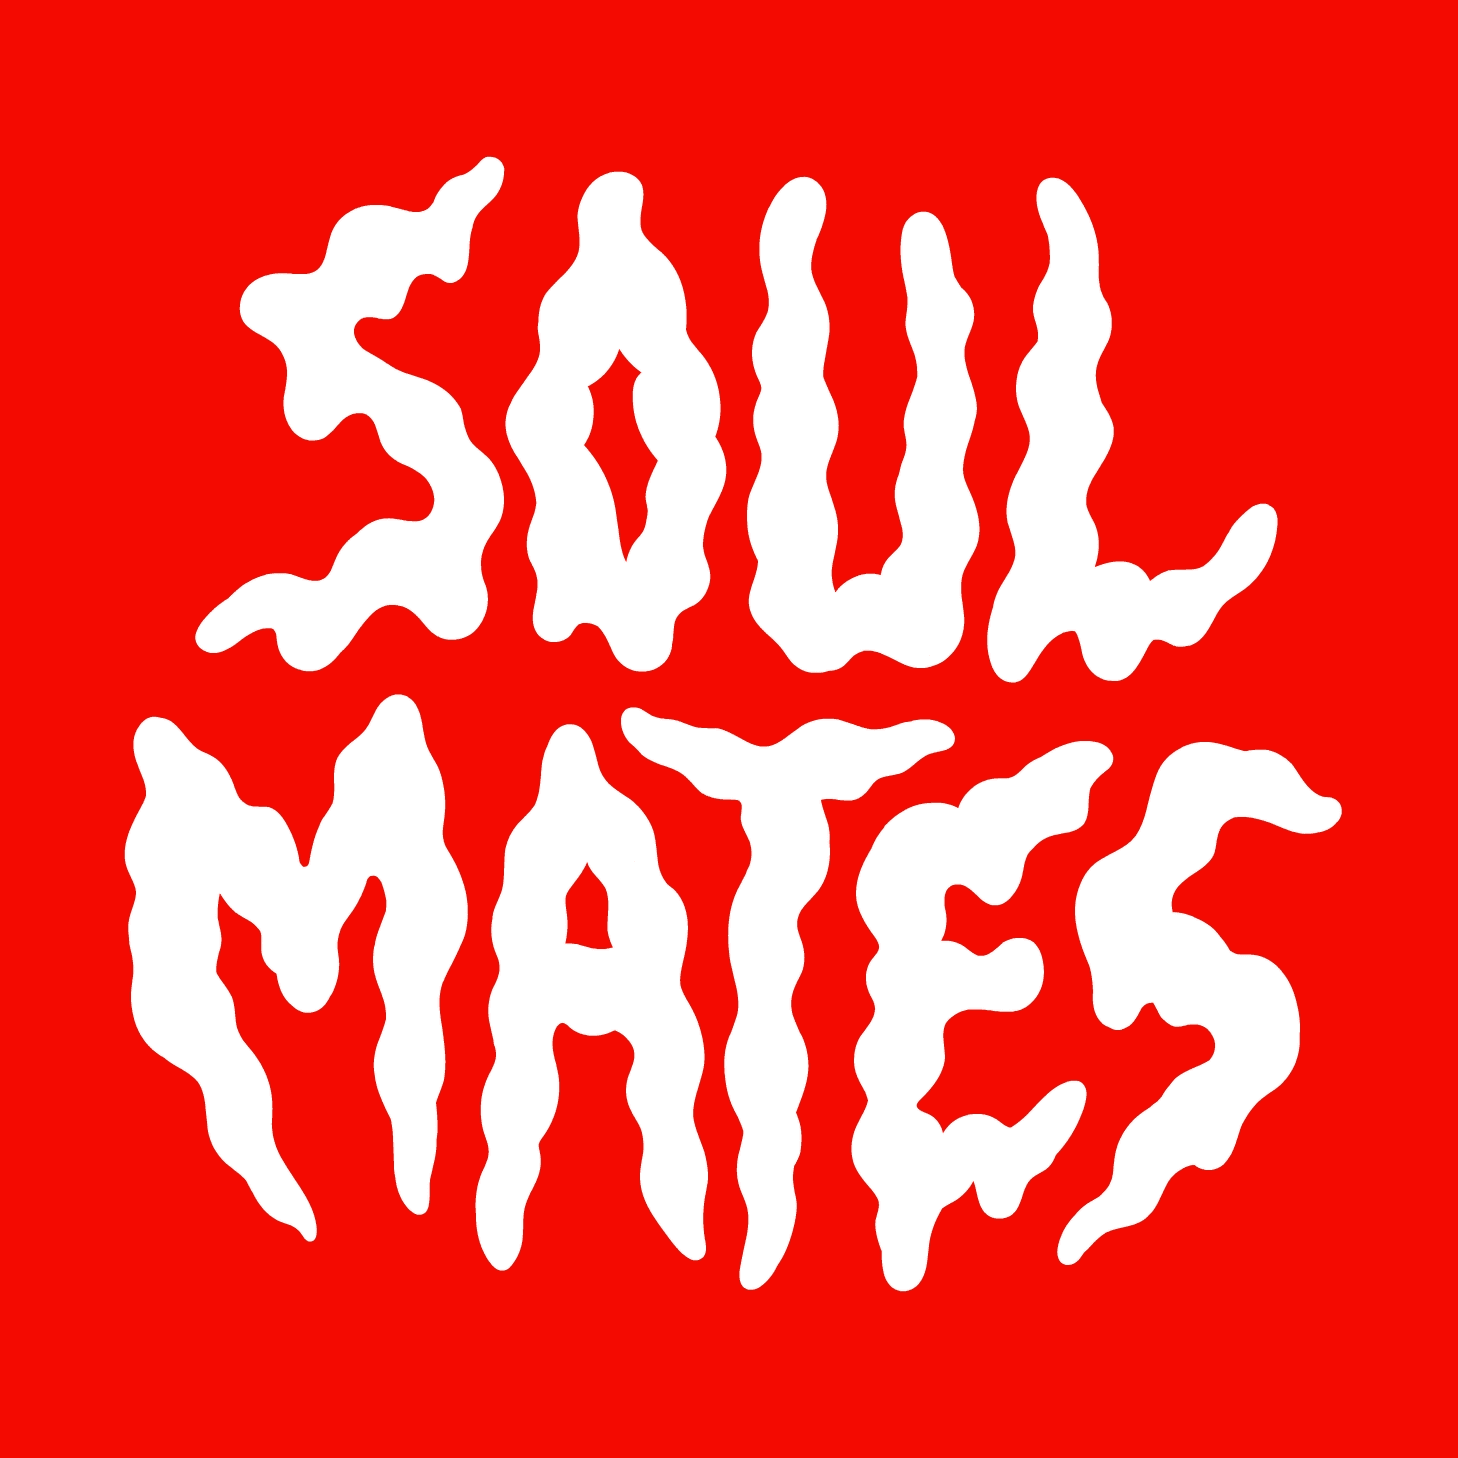 Soul Mates by MHDC